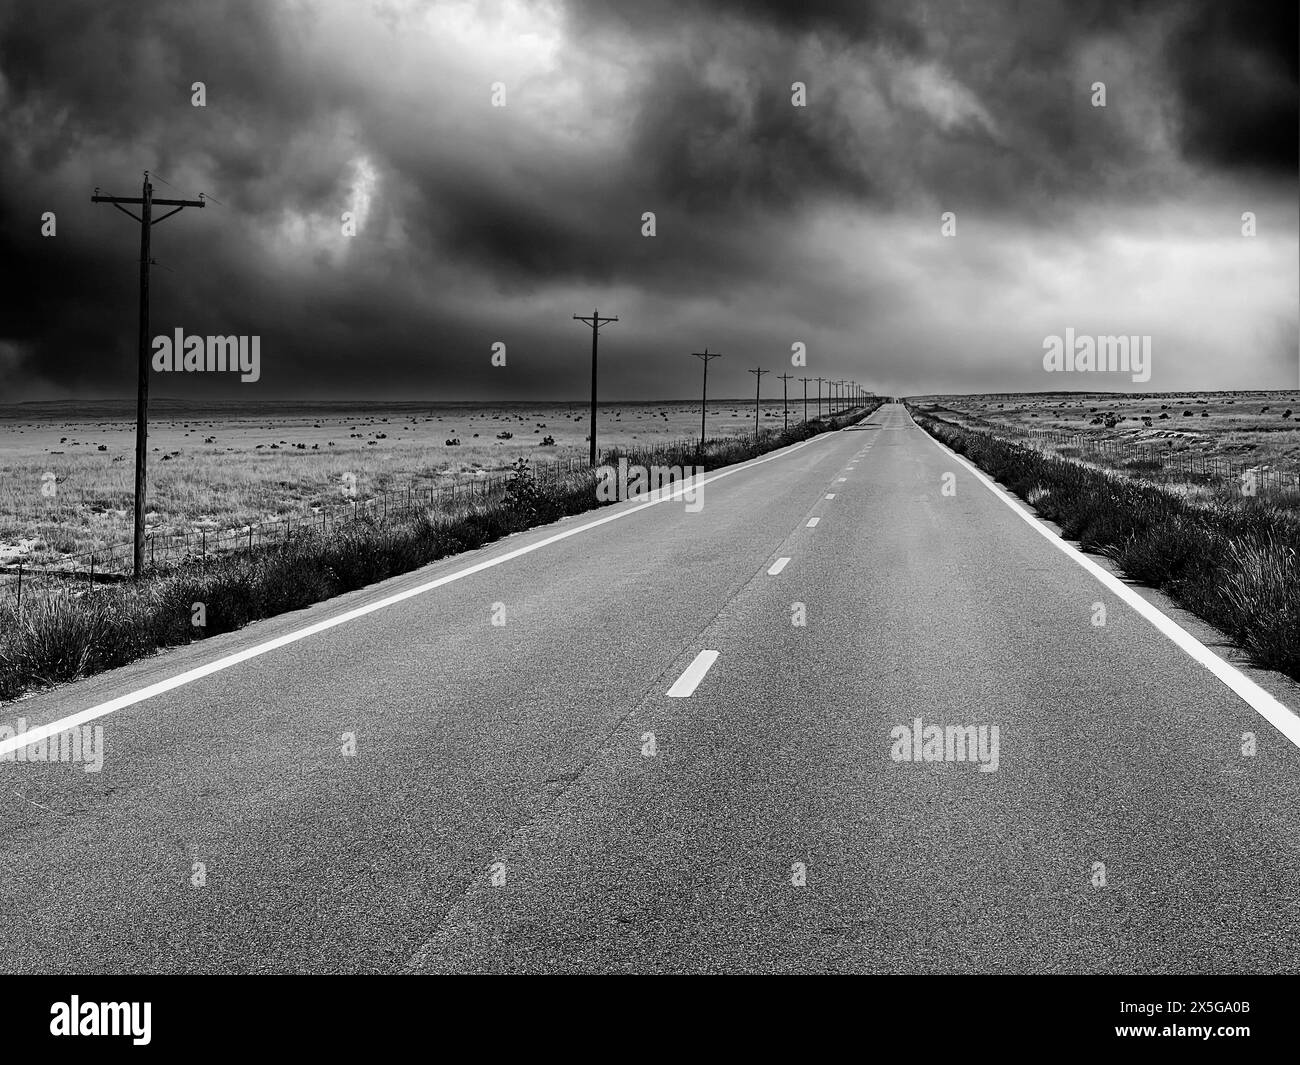 Eine schwarz-weiße Landschaft mit einer leeren zweispurigen Landstraße, die sich in die Ferne zieht und sich Sturmwolken nähern. Stockfoto